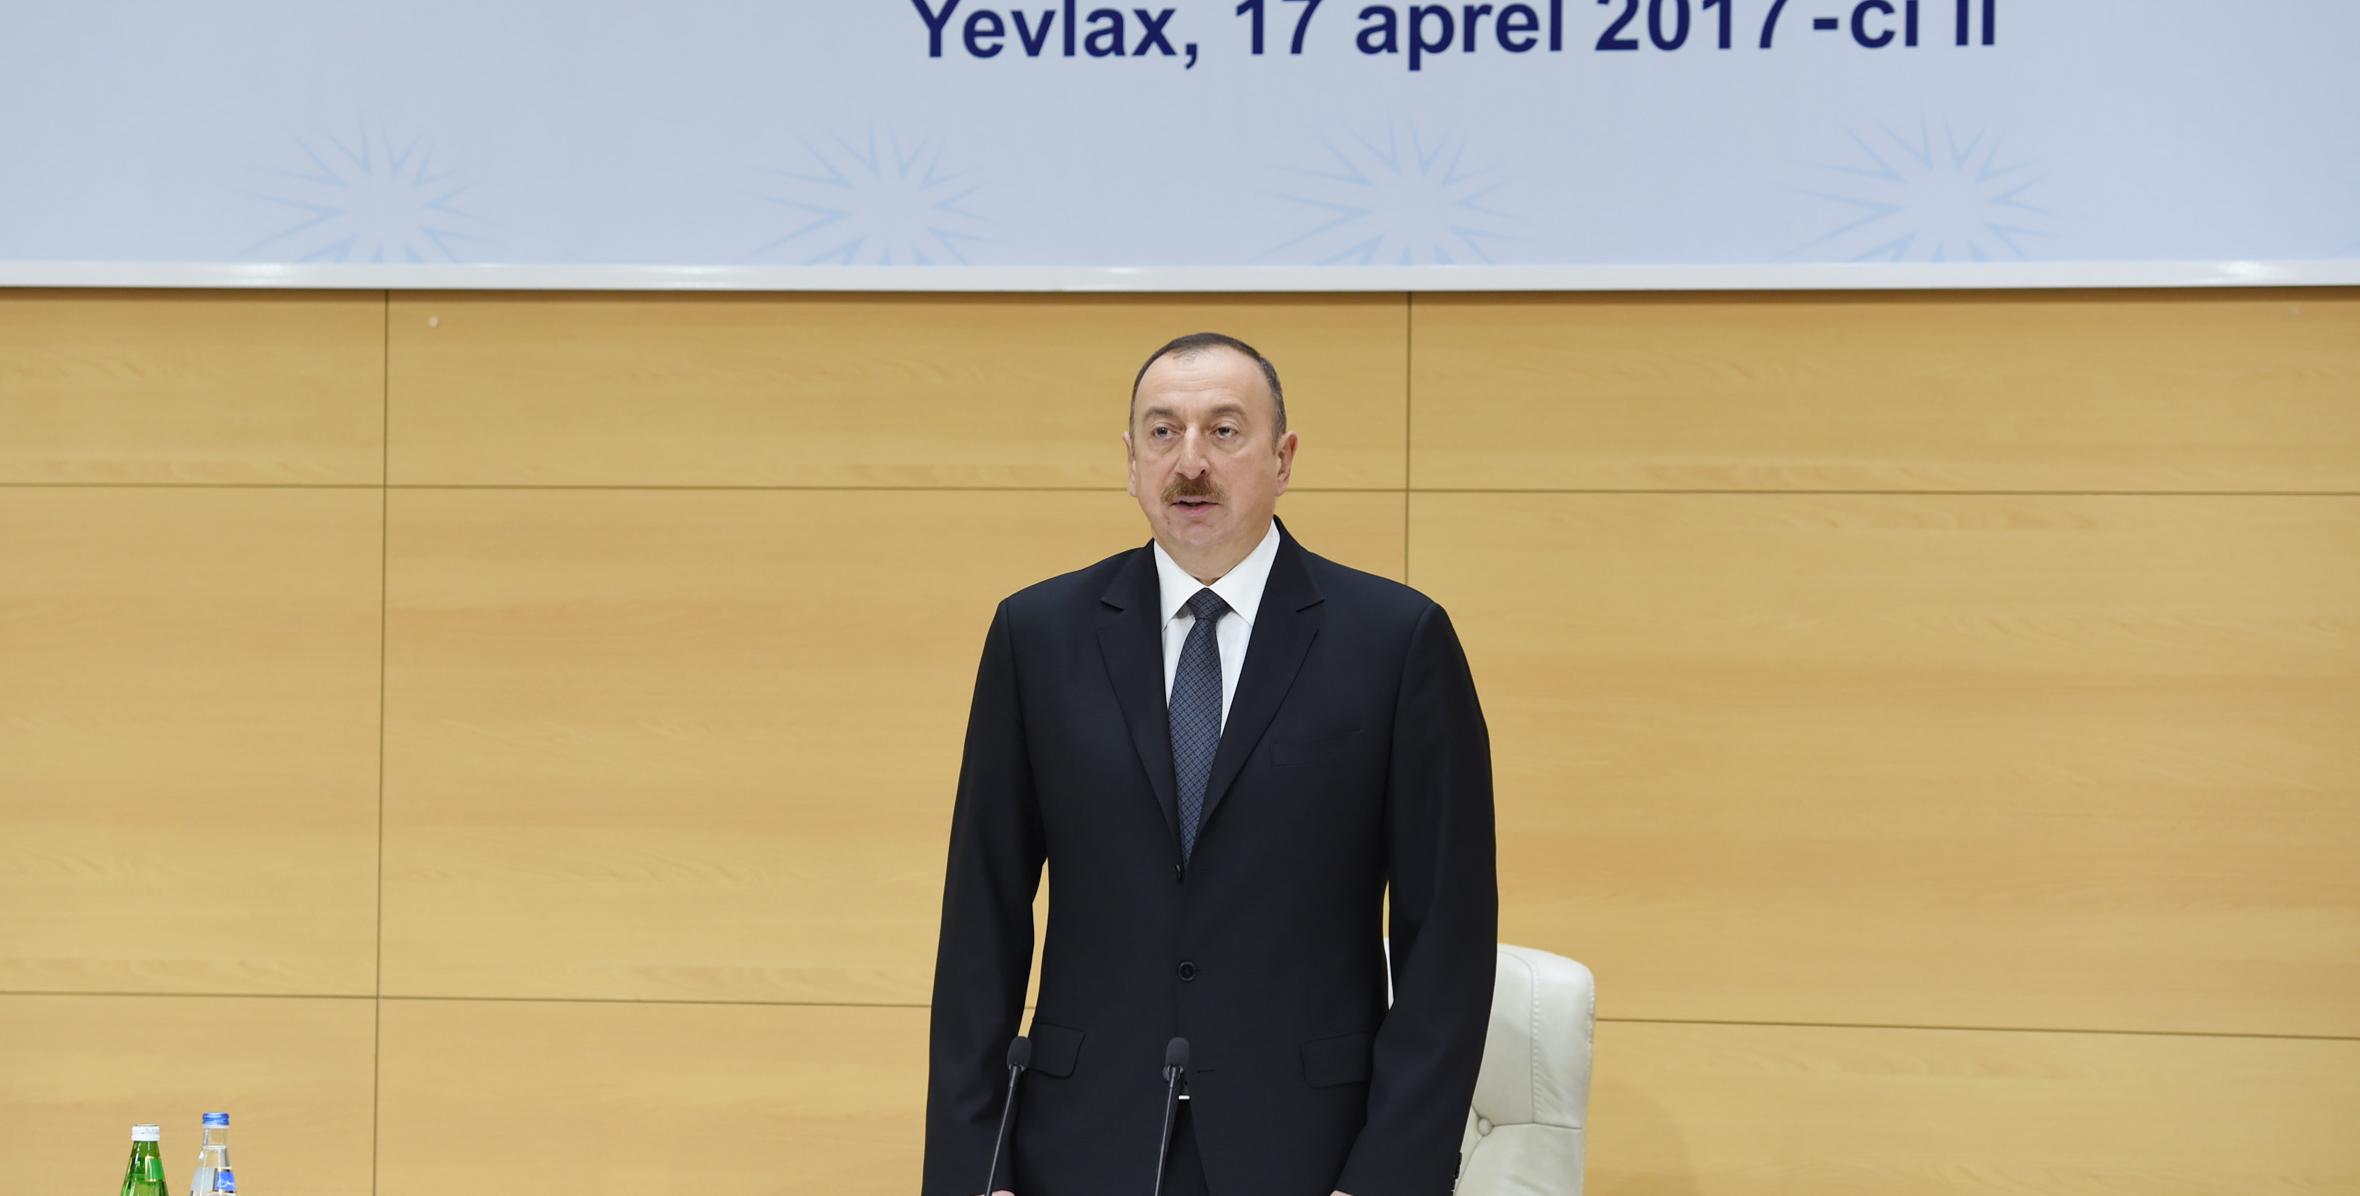 Вступительная речь Ильхама Алиева на республиканском совещании экспортеров ненефтяной продукции